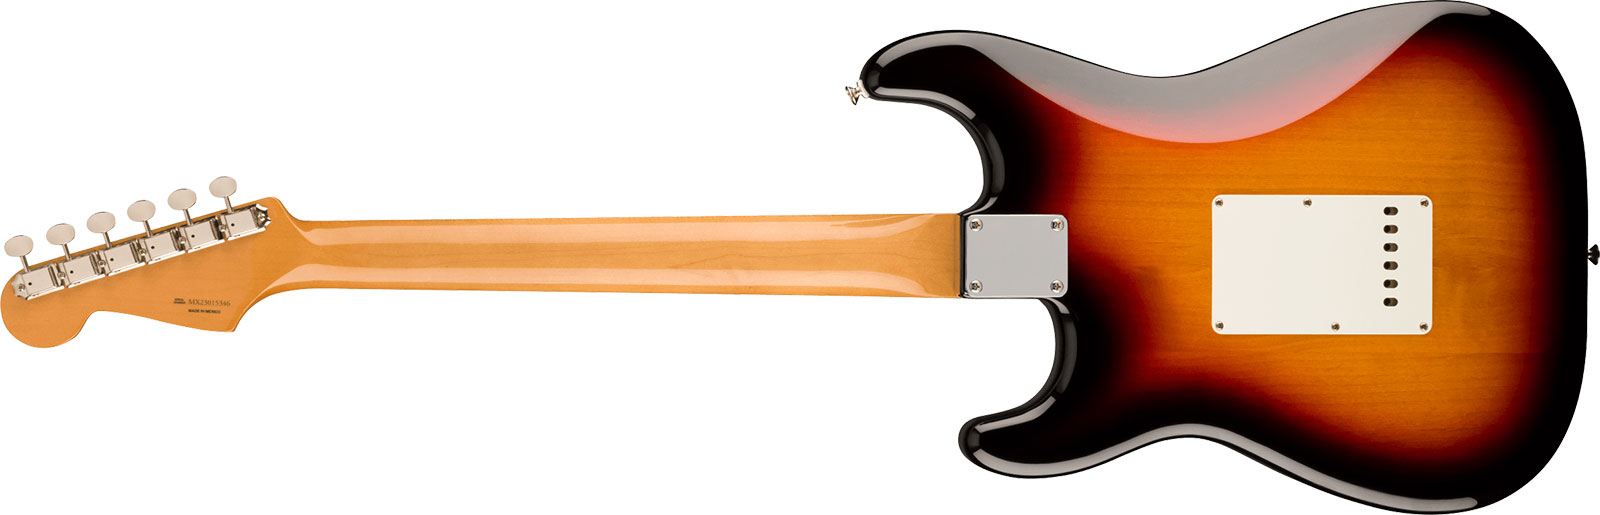 Fender Strat 60s Vintera 2 Mex 3s Trem Rw - 3-color Sunburst - Guitare Électrique Forme Str - Variation 1